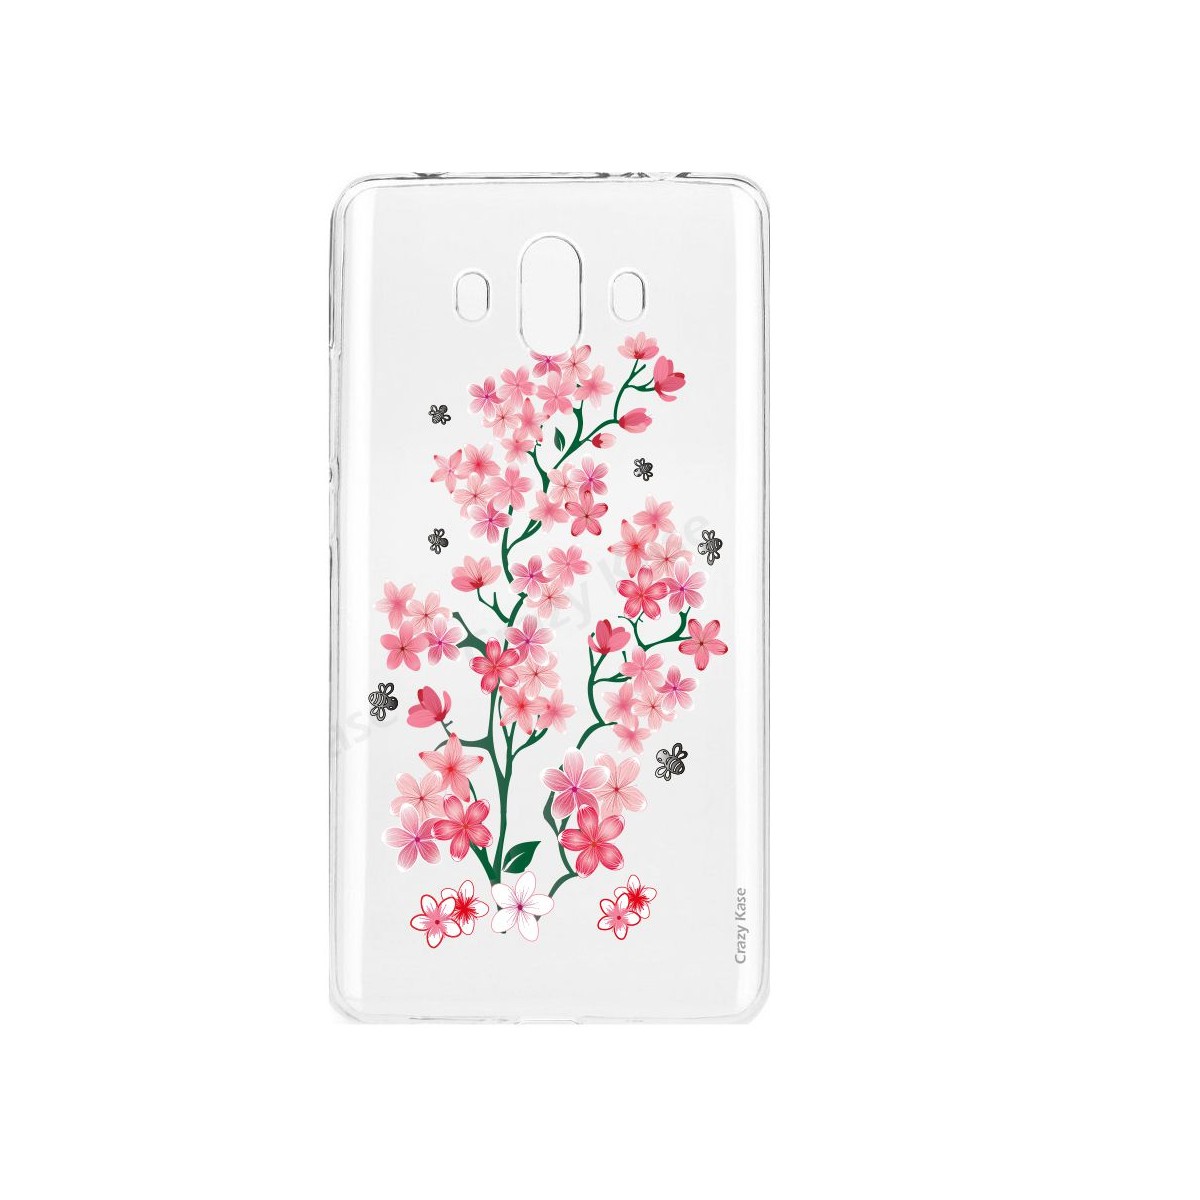 Coque Huawei Mate 10 souple motif Fleurs de Sakura - Crazy Kase